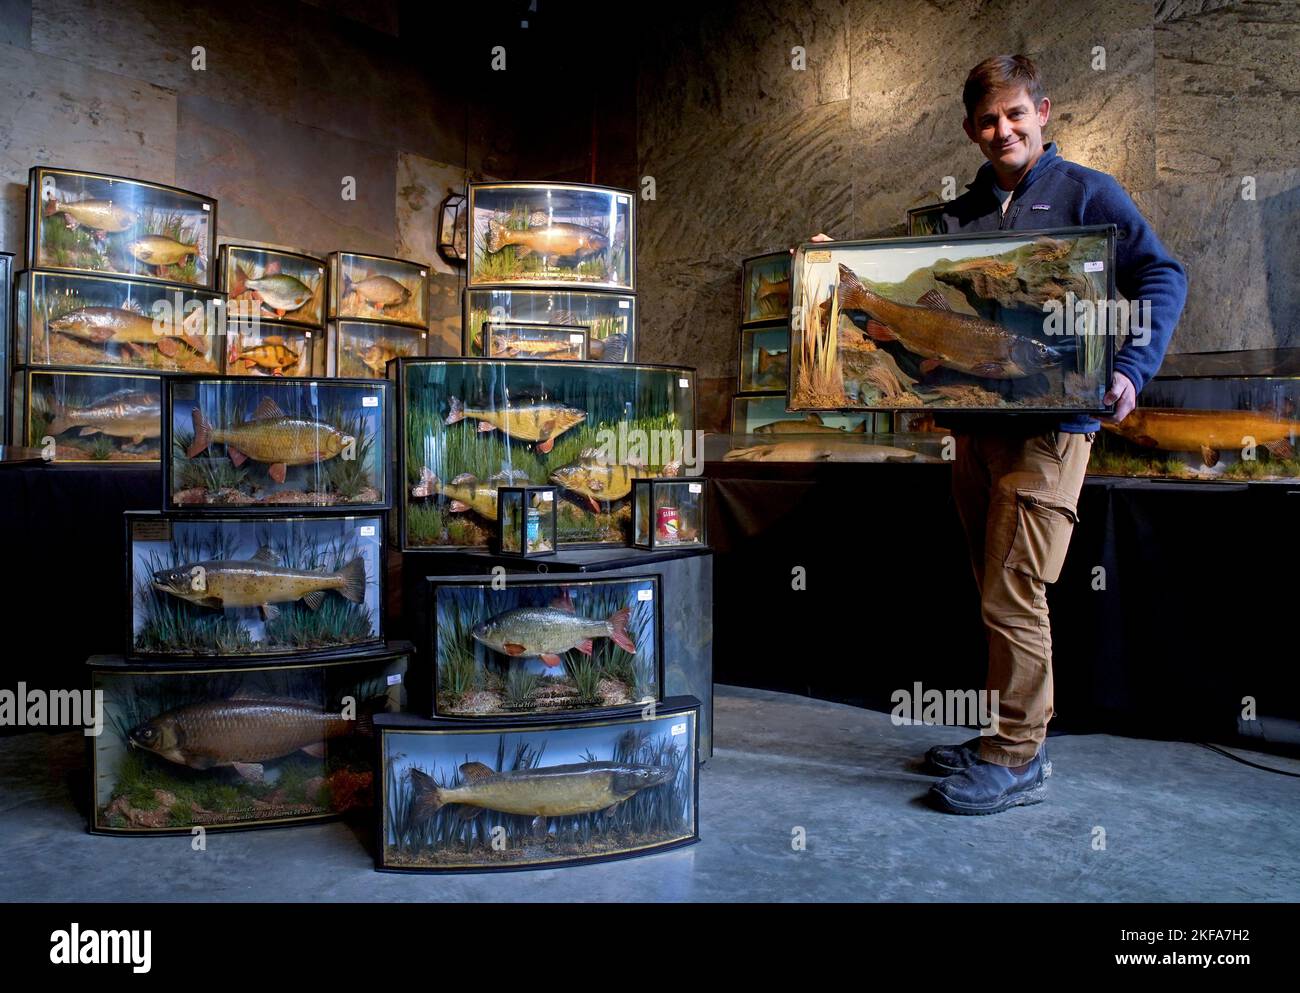 Rupert van der Werff von Summers Place Auctions in Billingshurst, West Sussex, bereitet einige der 88 Lots of Fish-Präparate vor, die in ihrer kommenden Evolution-Auktion noch in diesem Monat präsentiert werden. Bilddatum: Donnerstag, 17. November 2022. Stockfoto